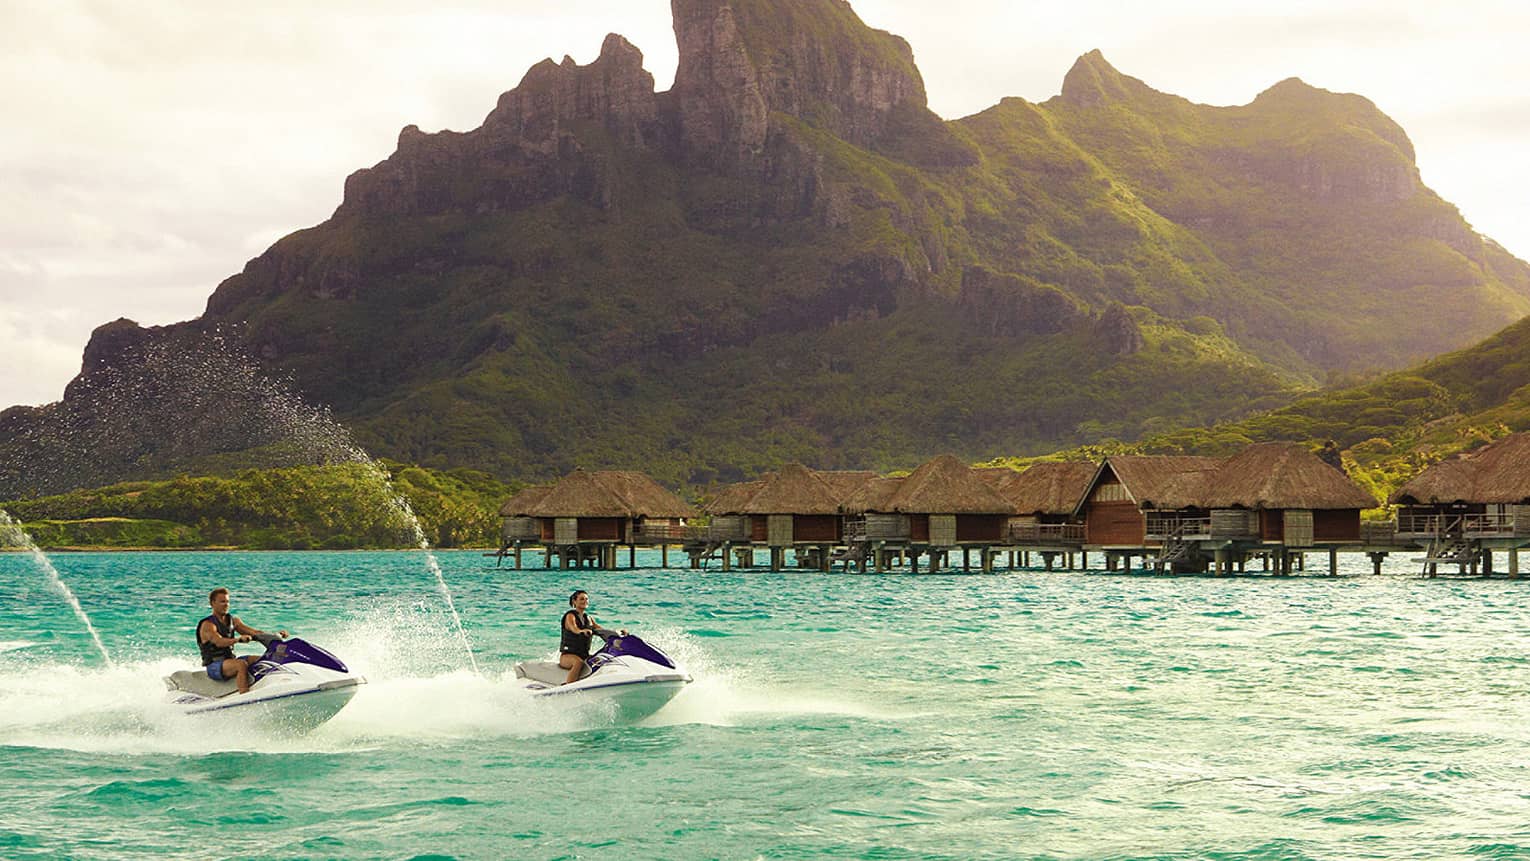 Two jet skis ride along lagoon past row of overwater bungalows, Bora Bora mountain